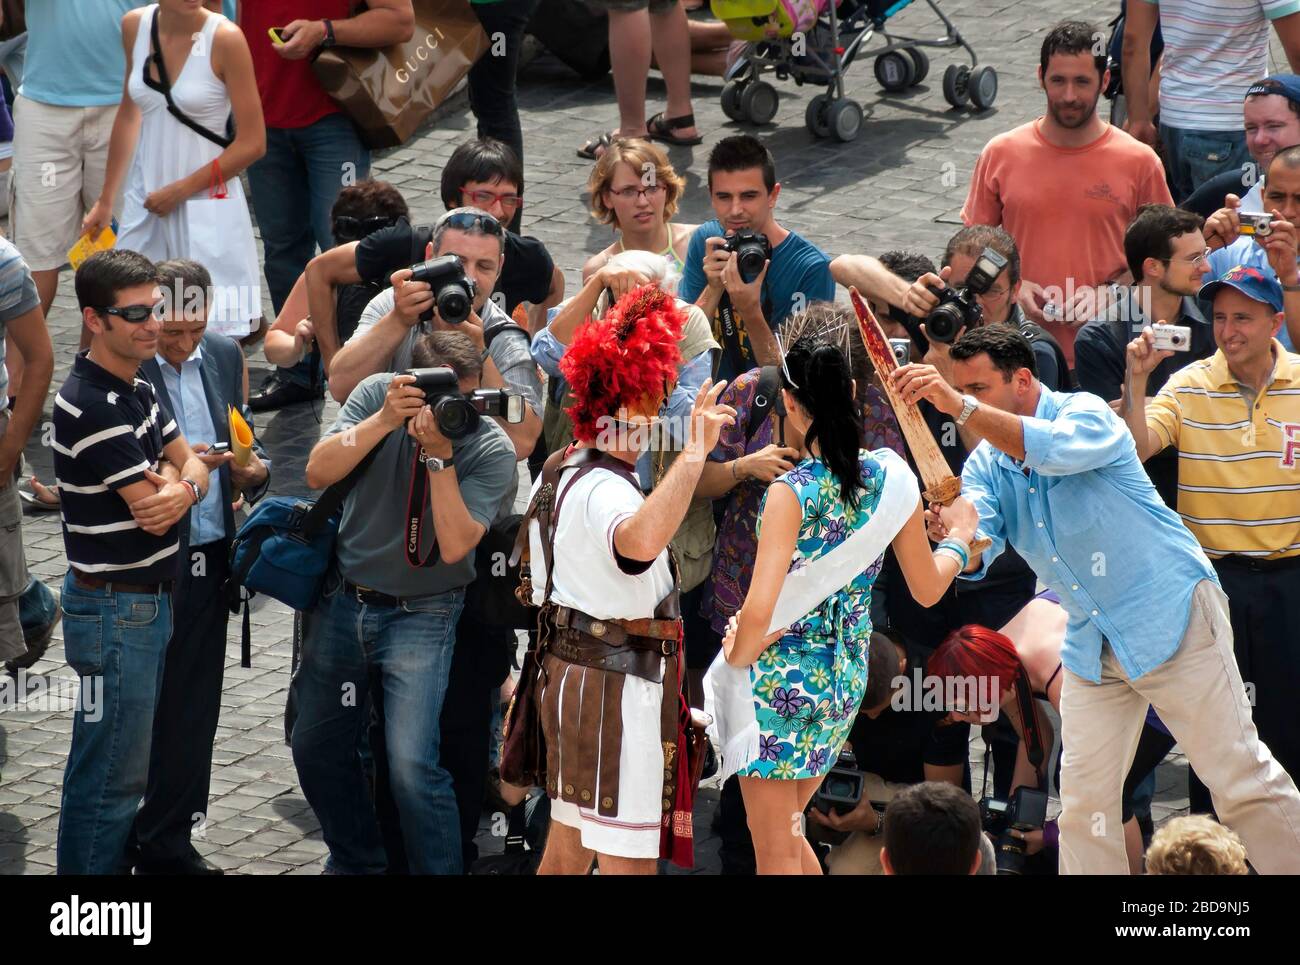 Un americano pone una regina di bellezza turisti (erroneamente) presumono sia famoso con un artista di costume durante le riprese fotografiche, Piazza di Spagna, Roma, Italia, colore Foto Stock